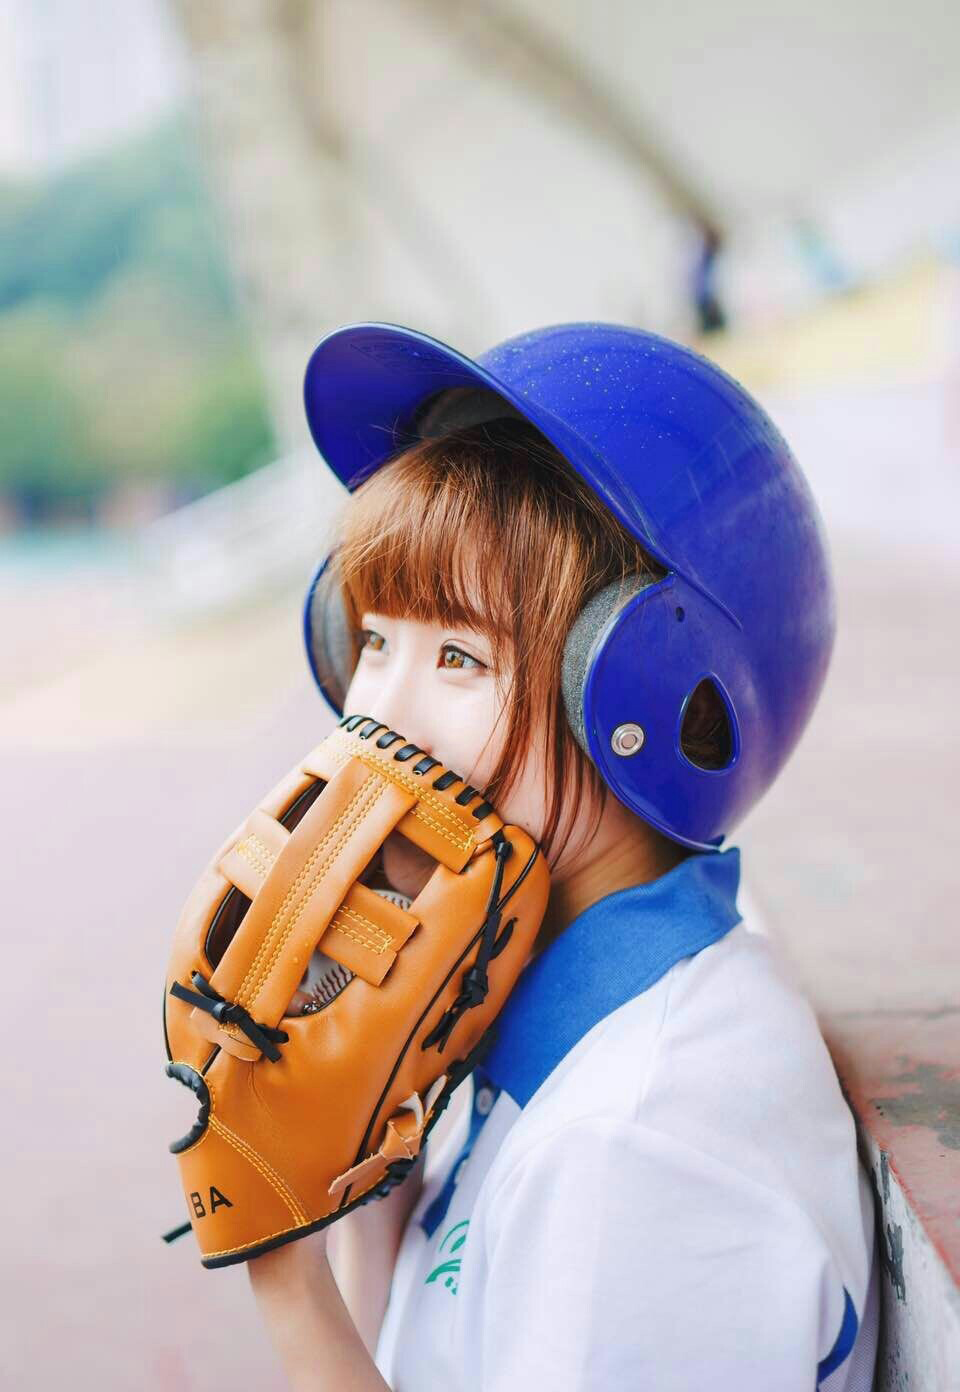 蓝色运动服少女棒球场挥汗写真活力十足